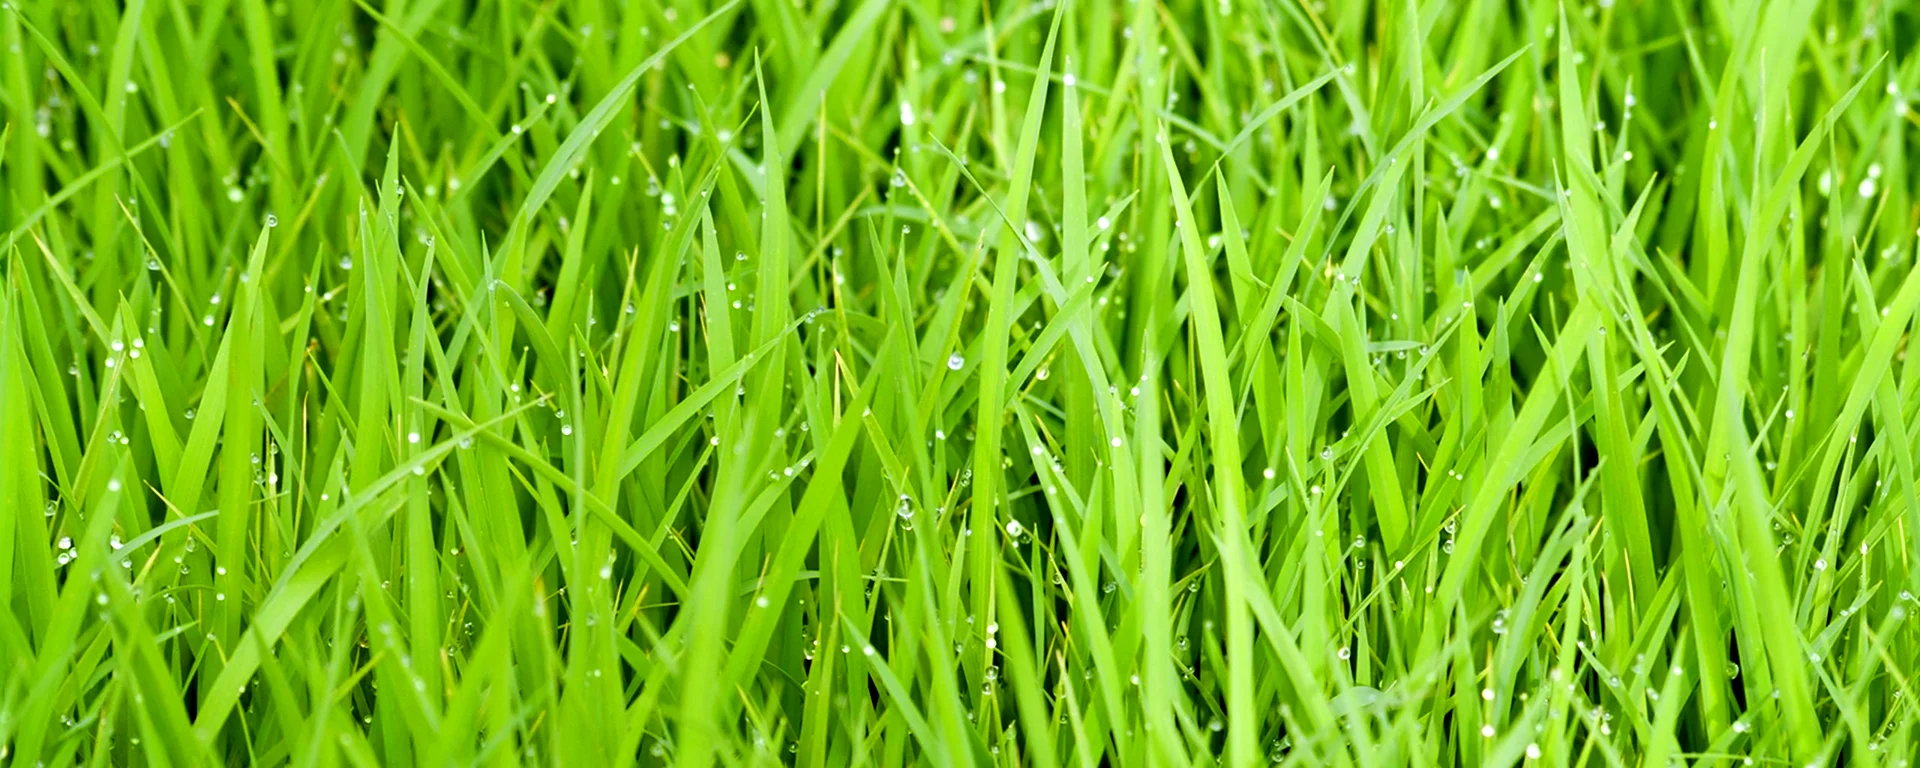 Зелёная трава для подложки